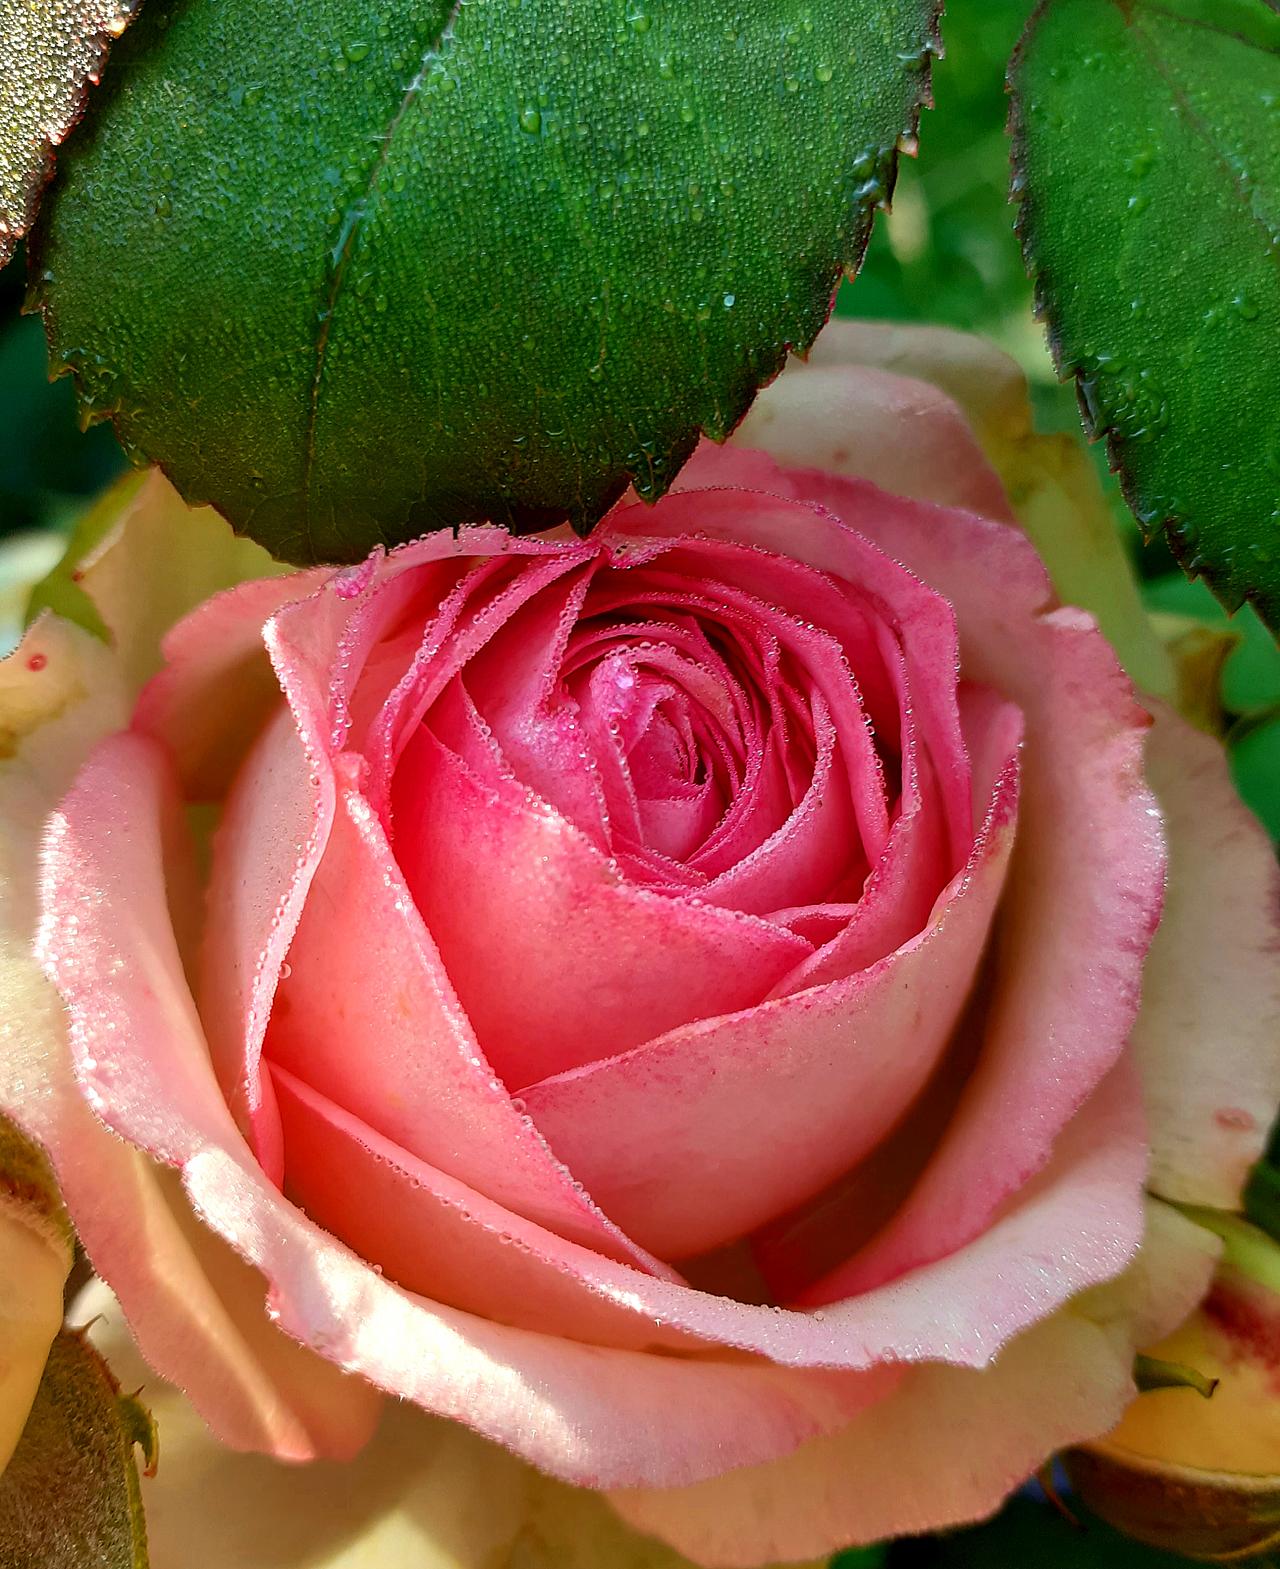 Eine rosafarbene Rose